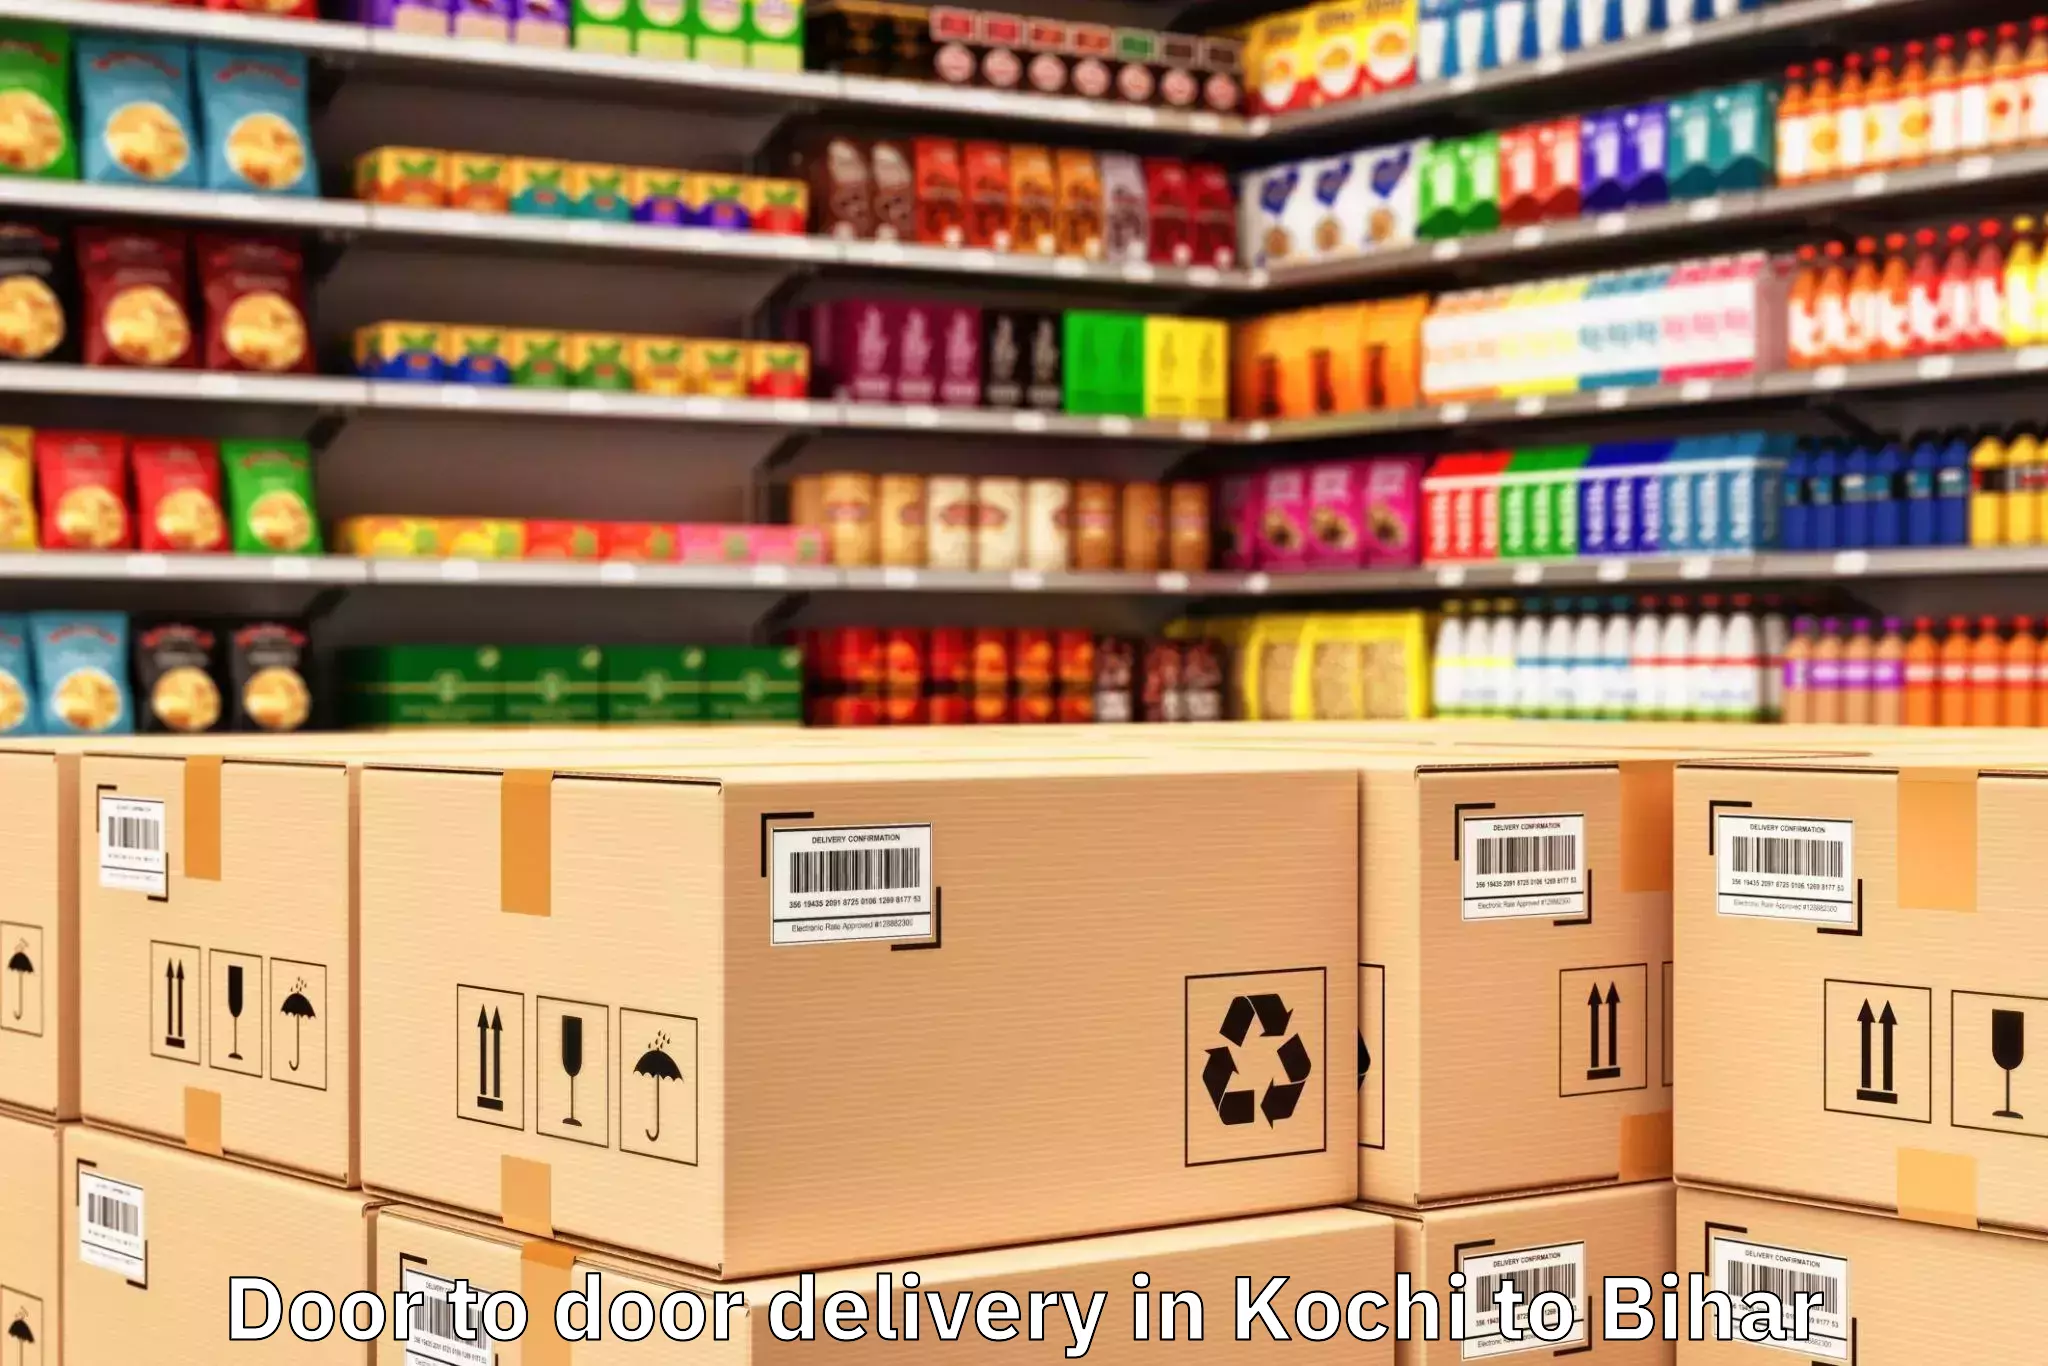 Get Kochi to Motihari Door To Door Delivery